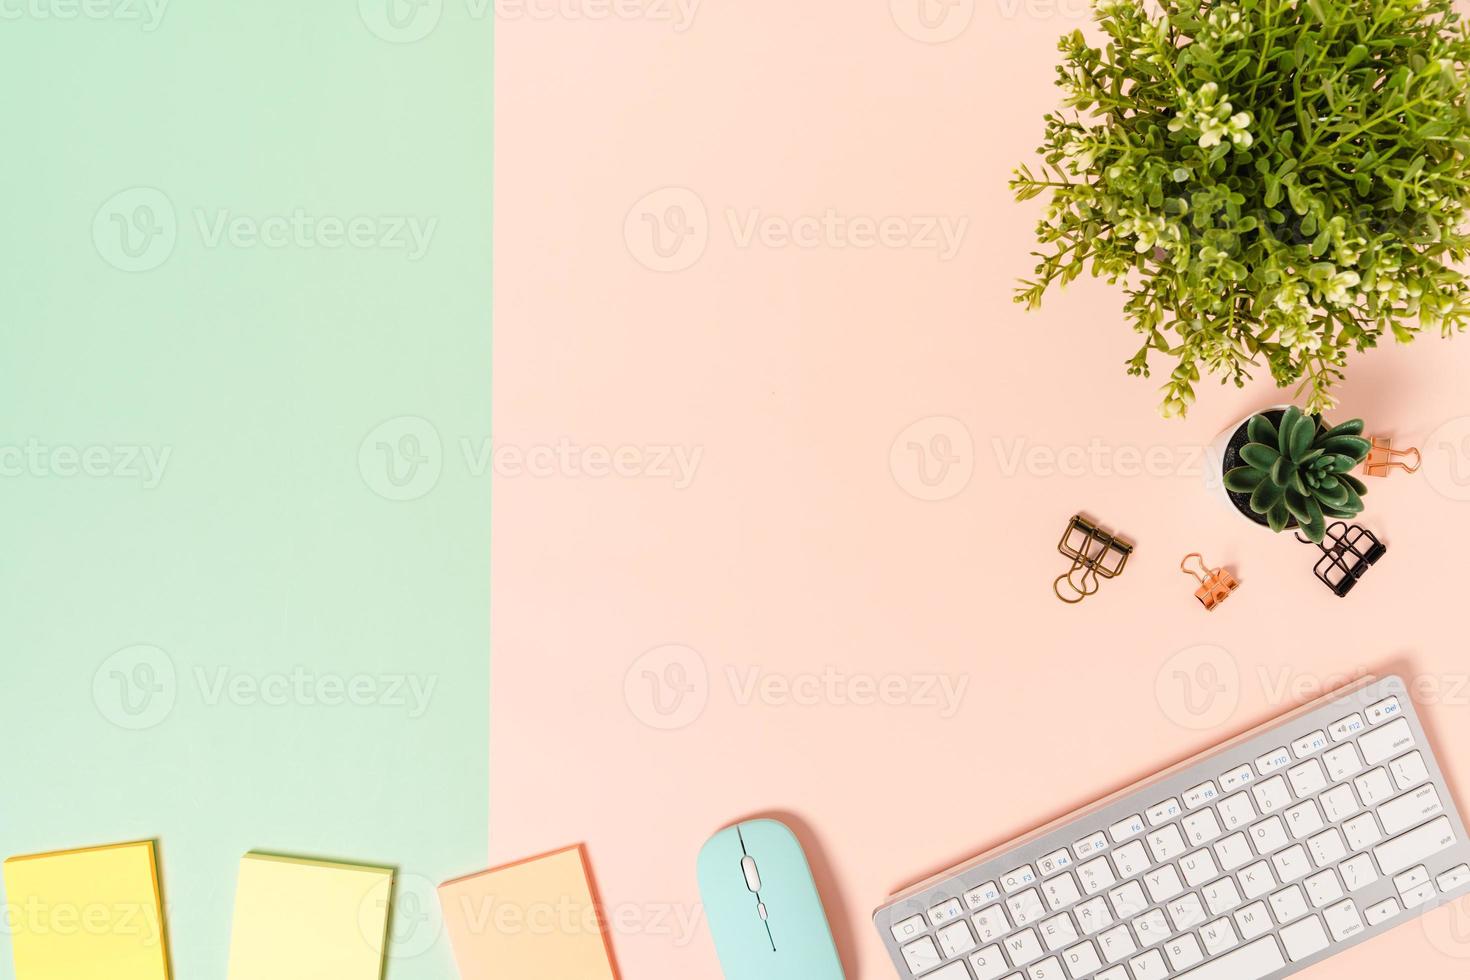 minimaler arbeitsplatz - kreatives flaches foto des arbeitsplatzes. Schreibtisch von oben mit Tastatur, Maus und Klebezettel auf pastellgrünem rosa Hintergrund. Draufsicht mit Kopienraumfotografie.